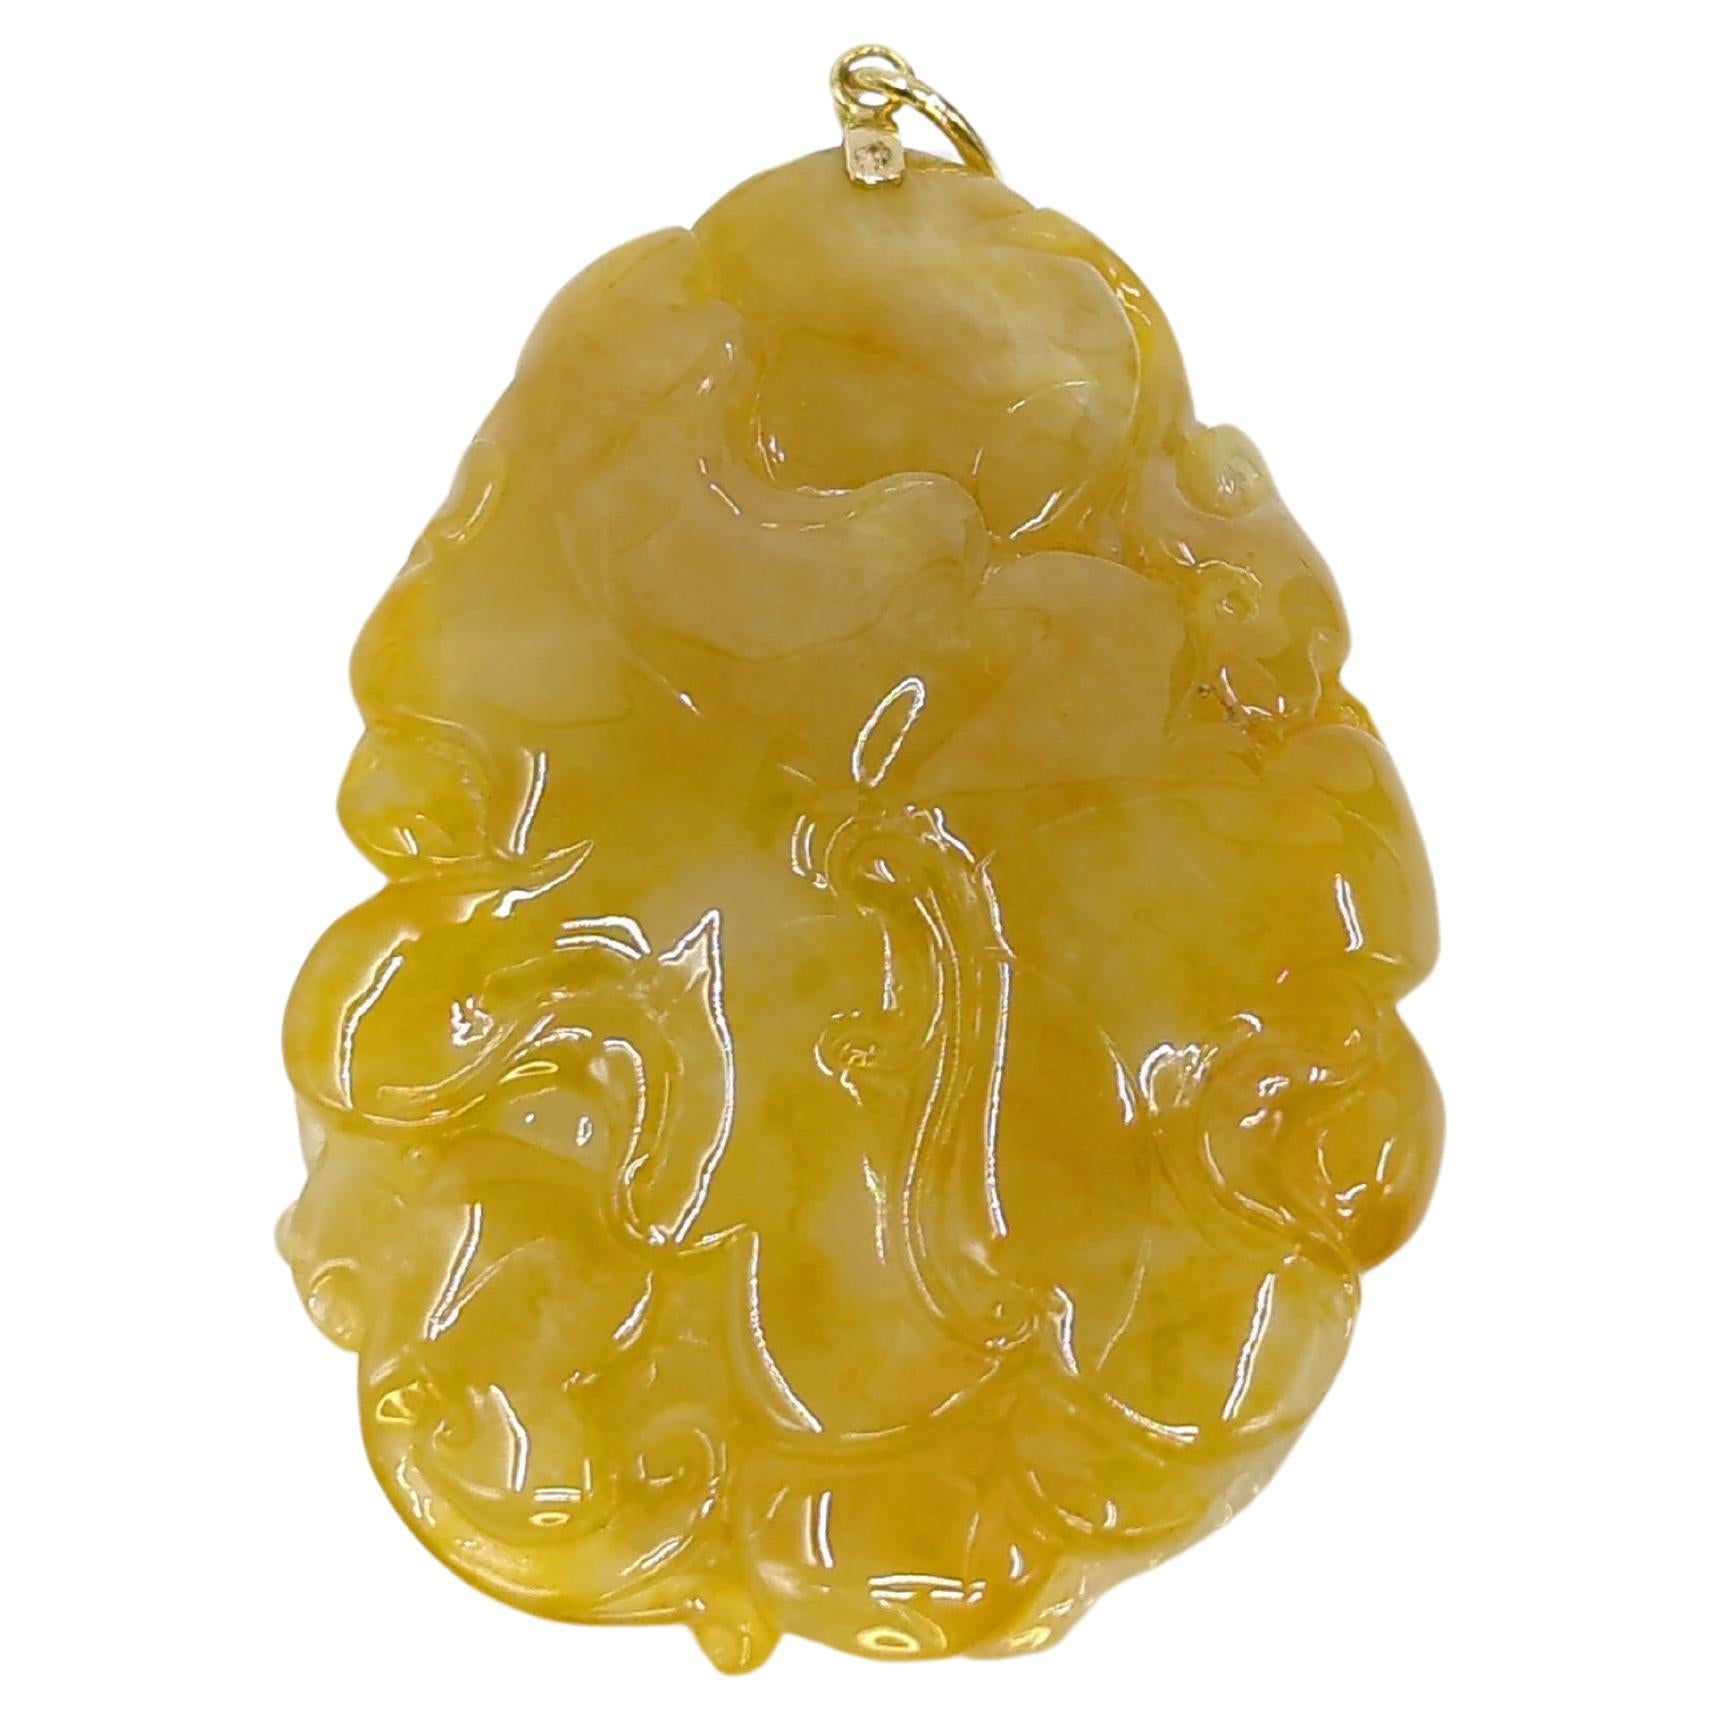 Cet exquis pendentif en jadéite jaune (62x43x12mm), magistralement sculpté sous la forme d'un chi-dragon serrant une pièce de monnaie dans sa gueule, est un symbole de prospérité et de bonne fortune. Le revers du pendentif présente une feuille de